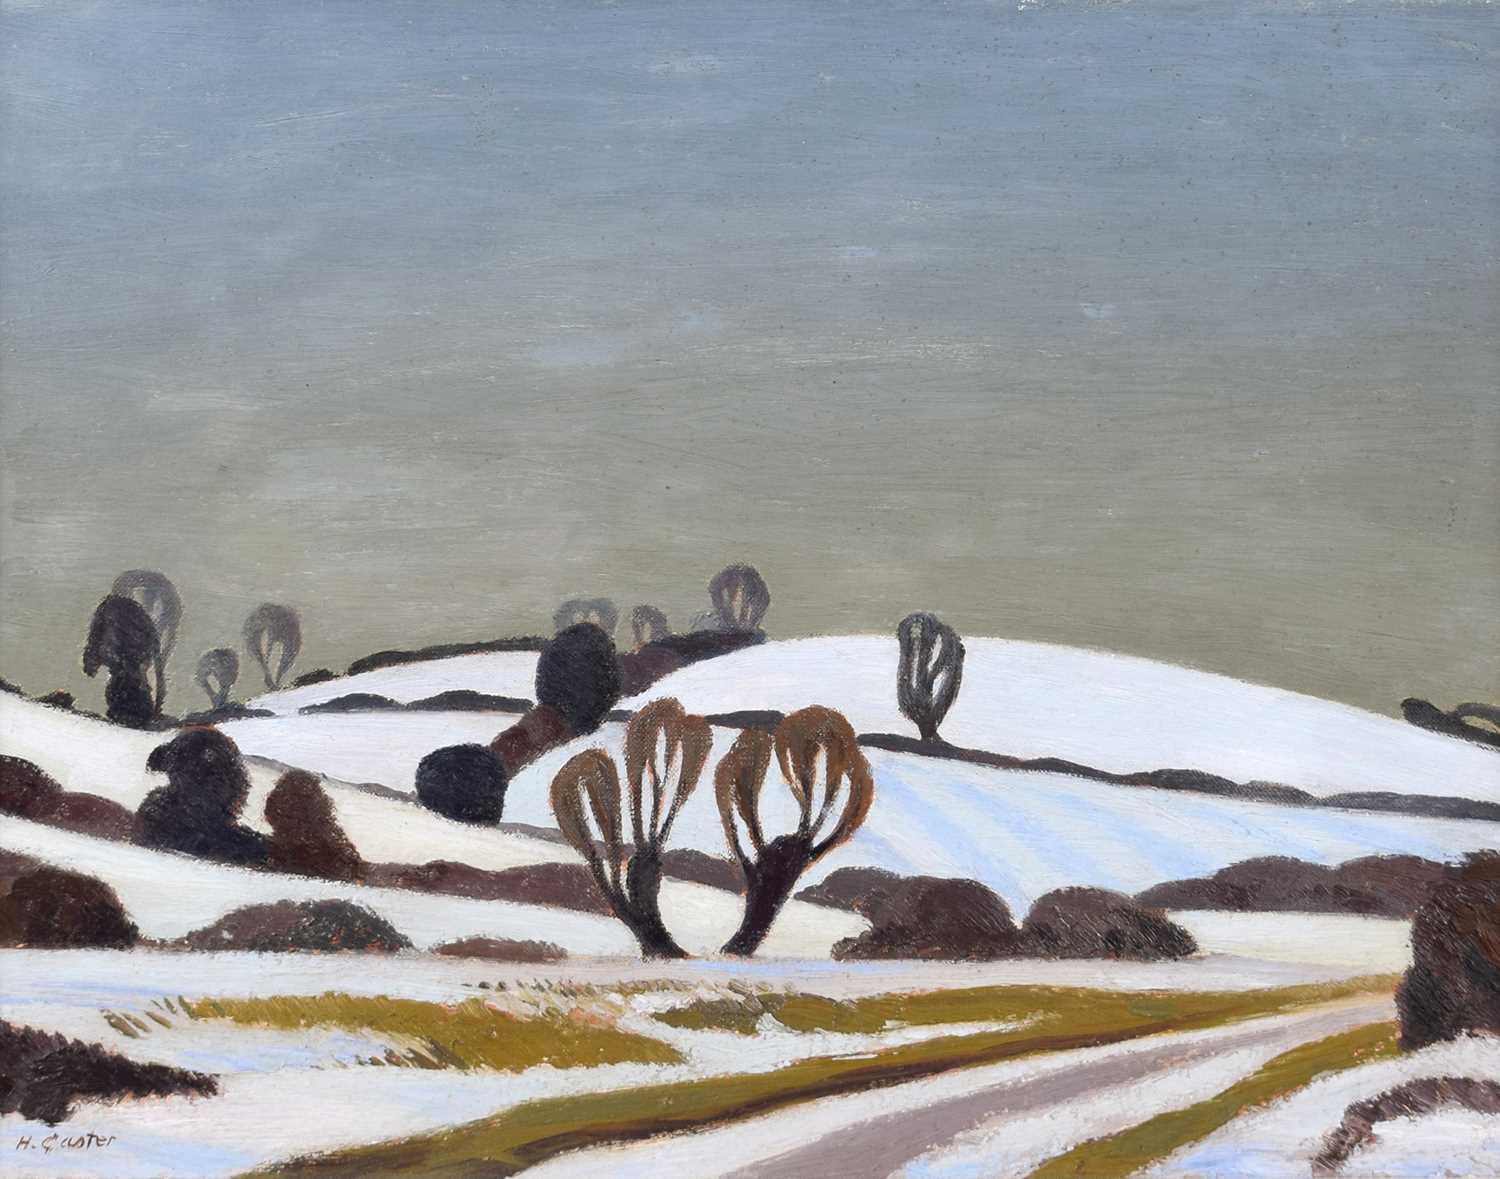 Harold Gaster (British 1906-1986) "Winter Landscape"